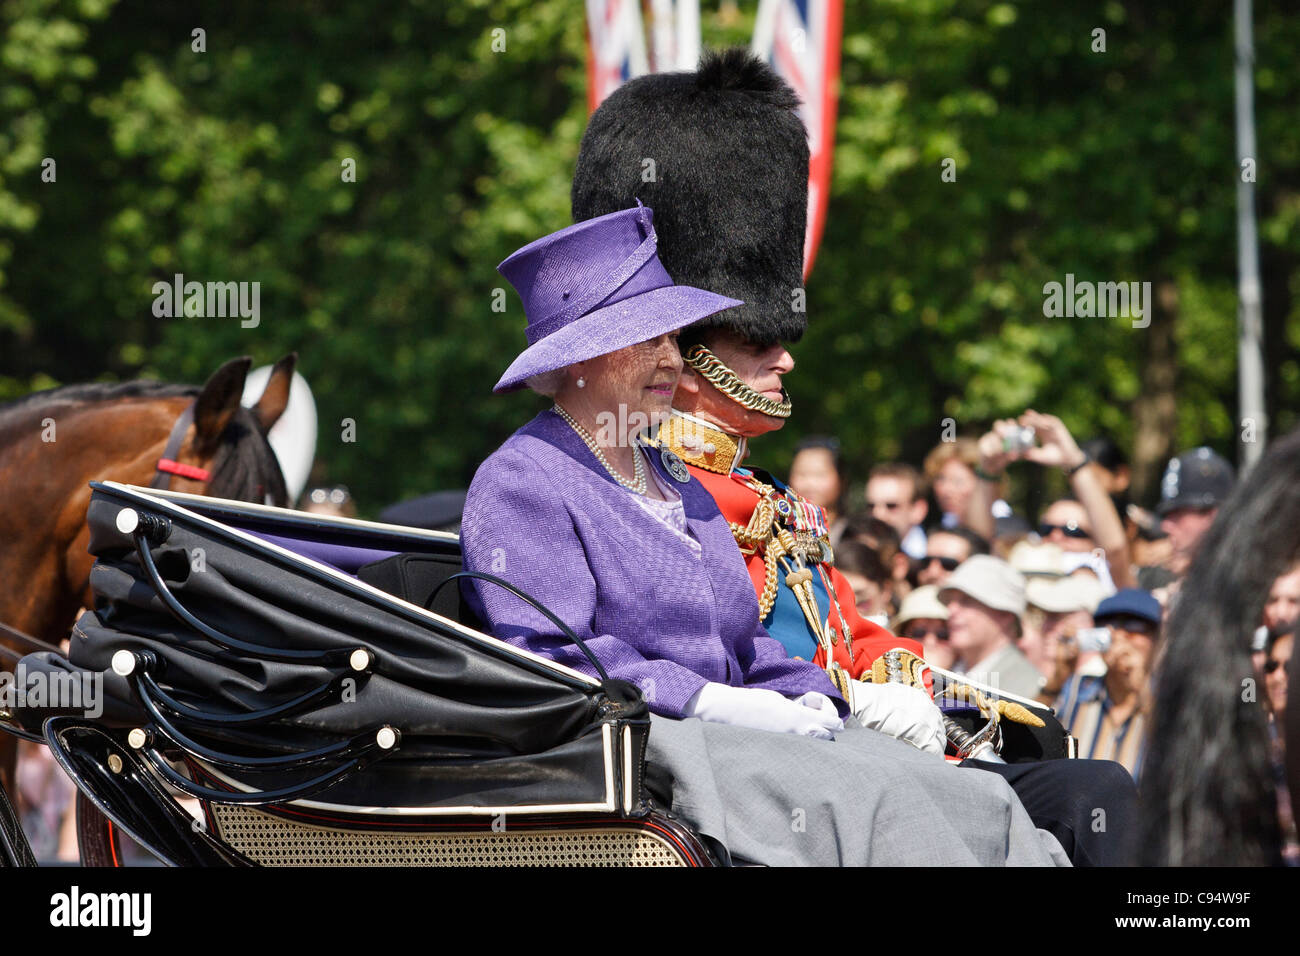 La reina Isabel II y el príncipe Felipe viaja en carruaje tirado por caballos a Buckingham Palace durante el Trooping el color. Foto de stock